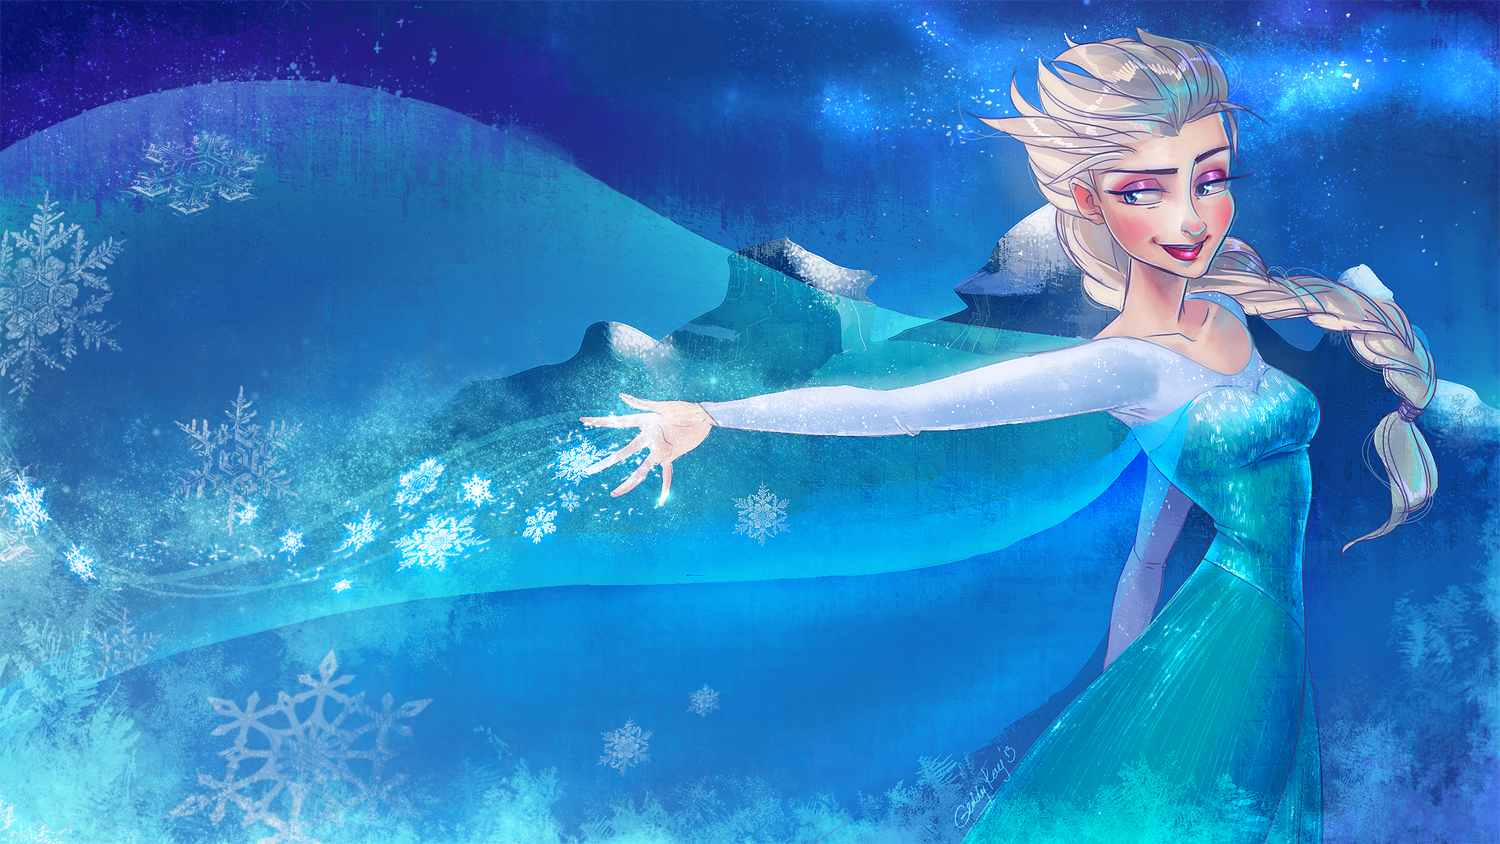 Frozen Elsa by GeddyKay 1500x844